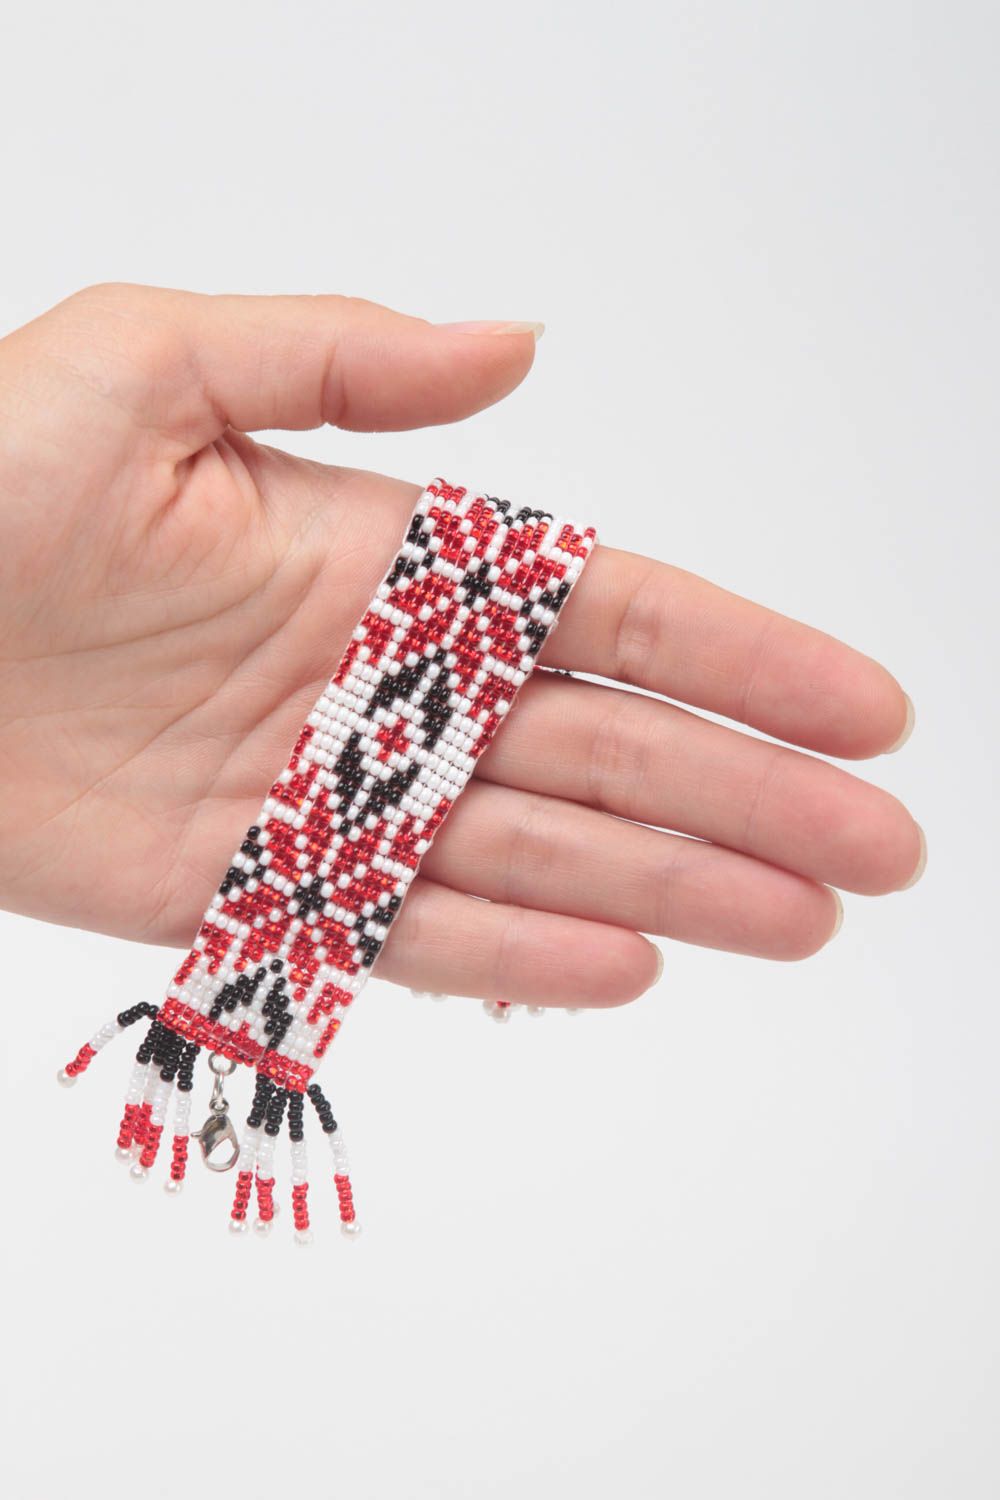 Handmade ethnic Ukrainian style beaded bracelet in red, black and white color for women photo 5